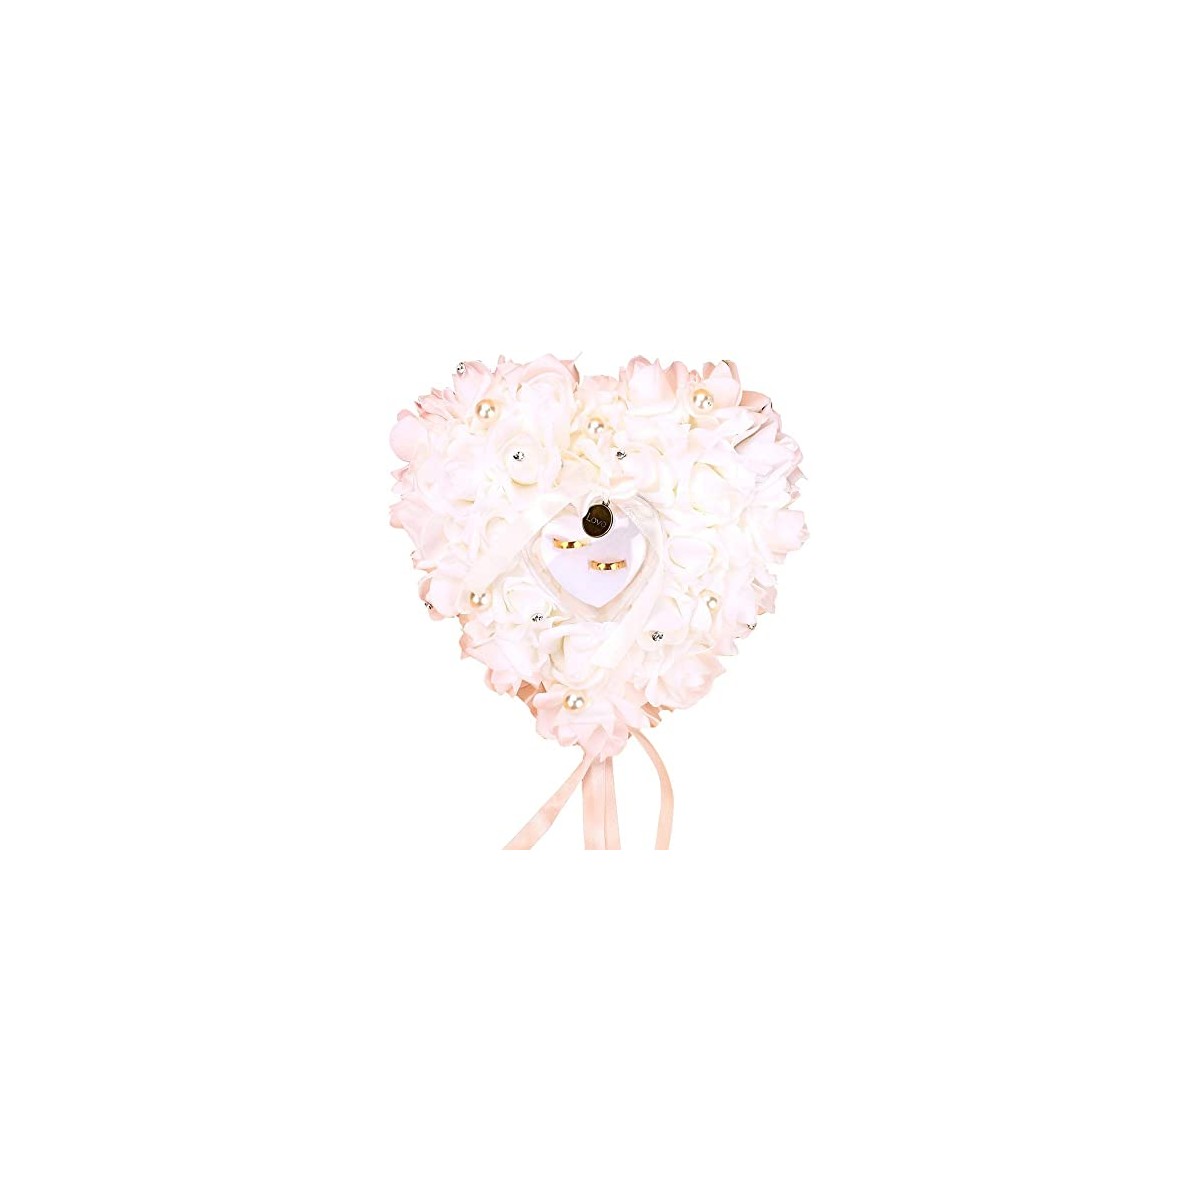 Milky White Okuyonic Cuscino per FEDI Nuziali Design Compatto Decorazioni romantiche con Strass Rosa a Forma di Cuore Cuscino per FEDI Nuziali romantiche per la Decorazione della Festa Nuziale 